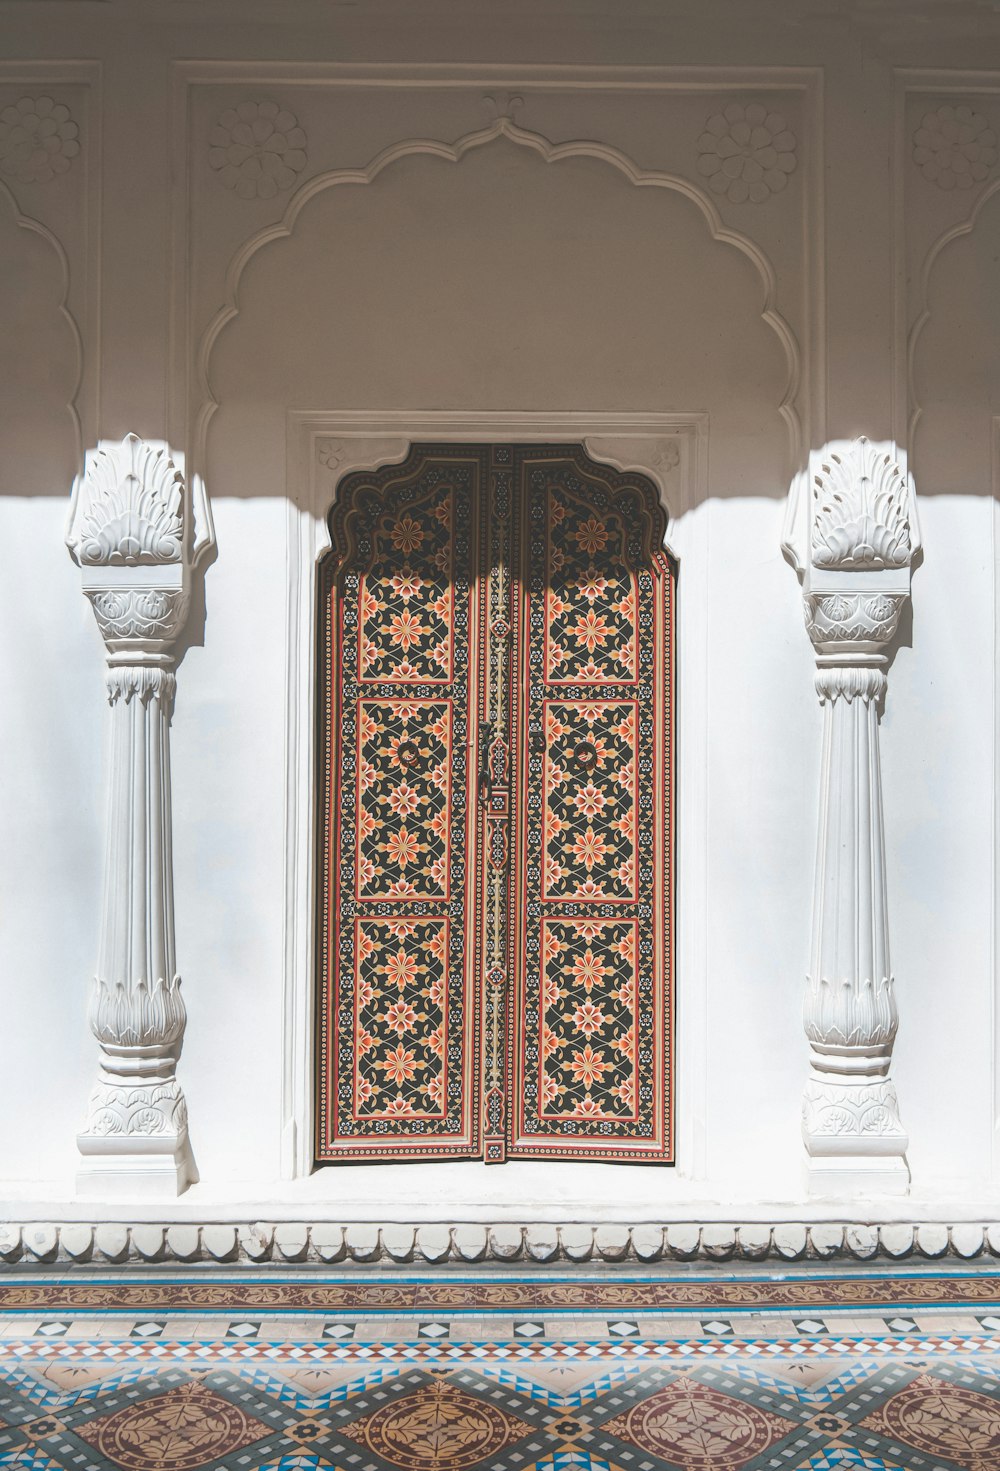 a doorway with a decorative door and pillars